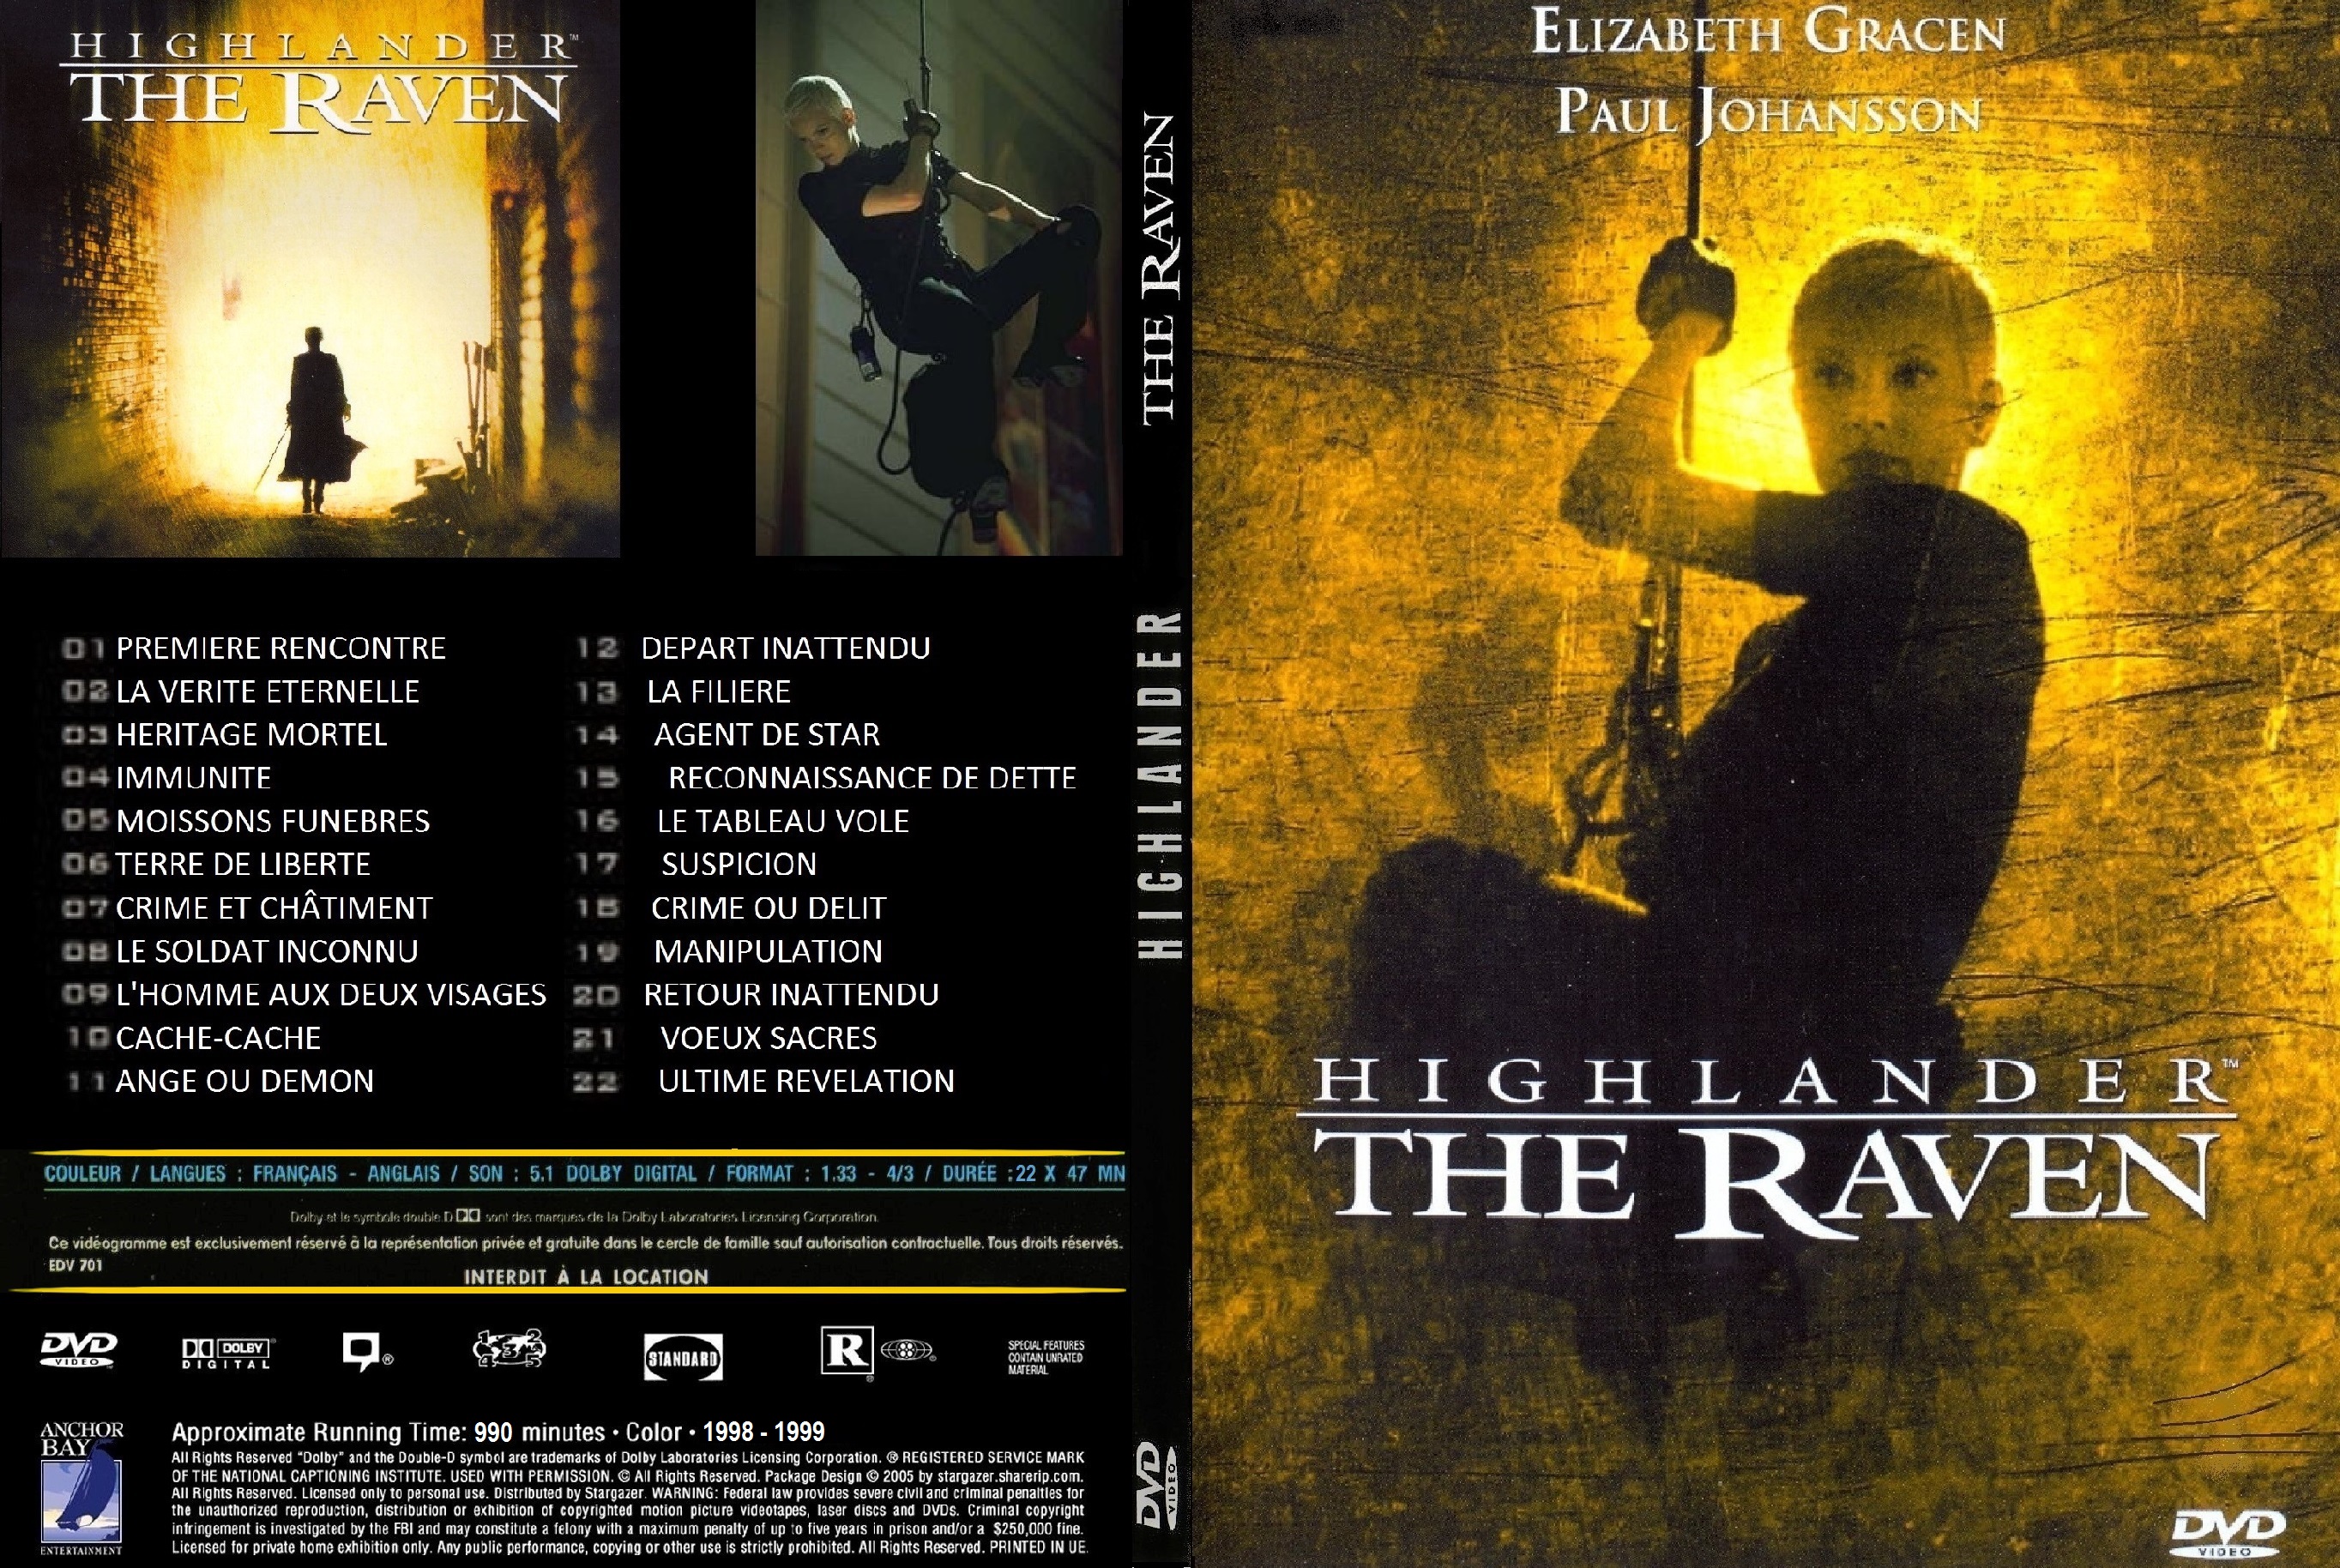 Jaquette DVD Highlander The Raven SLIM custom